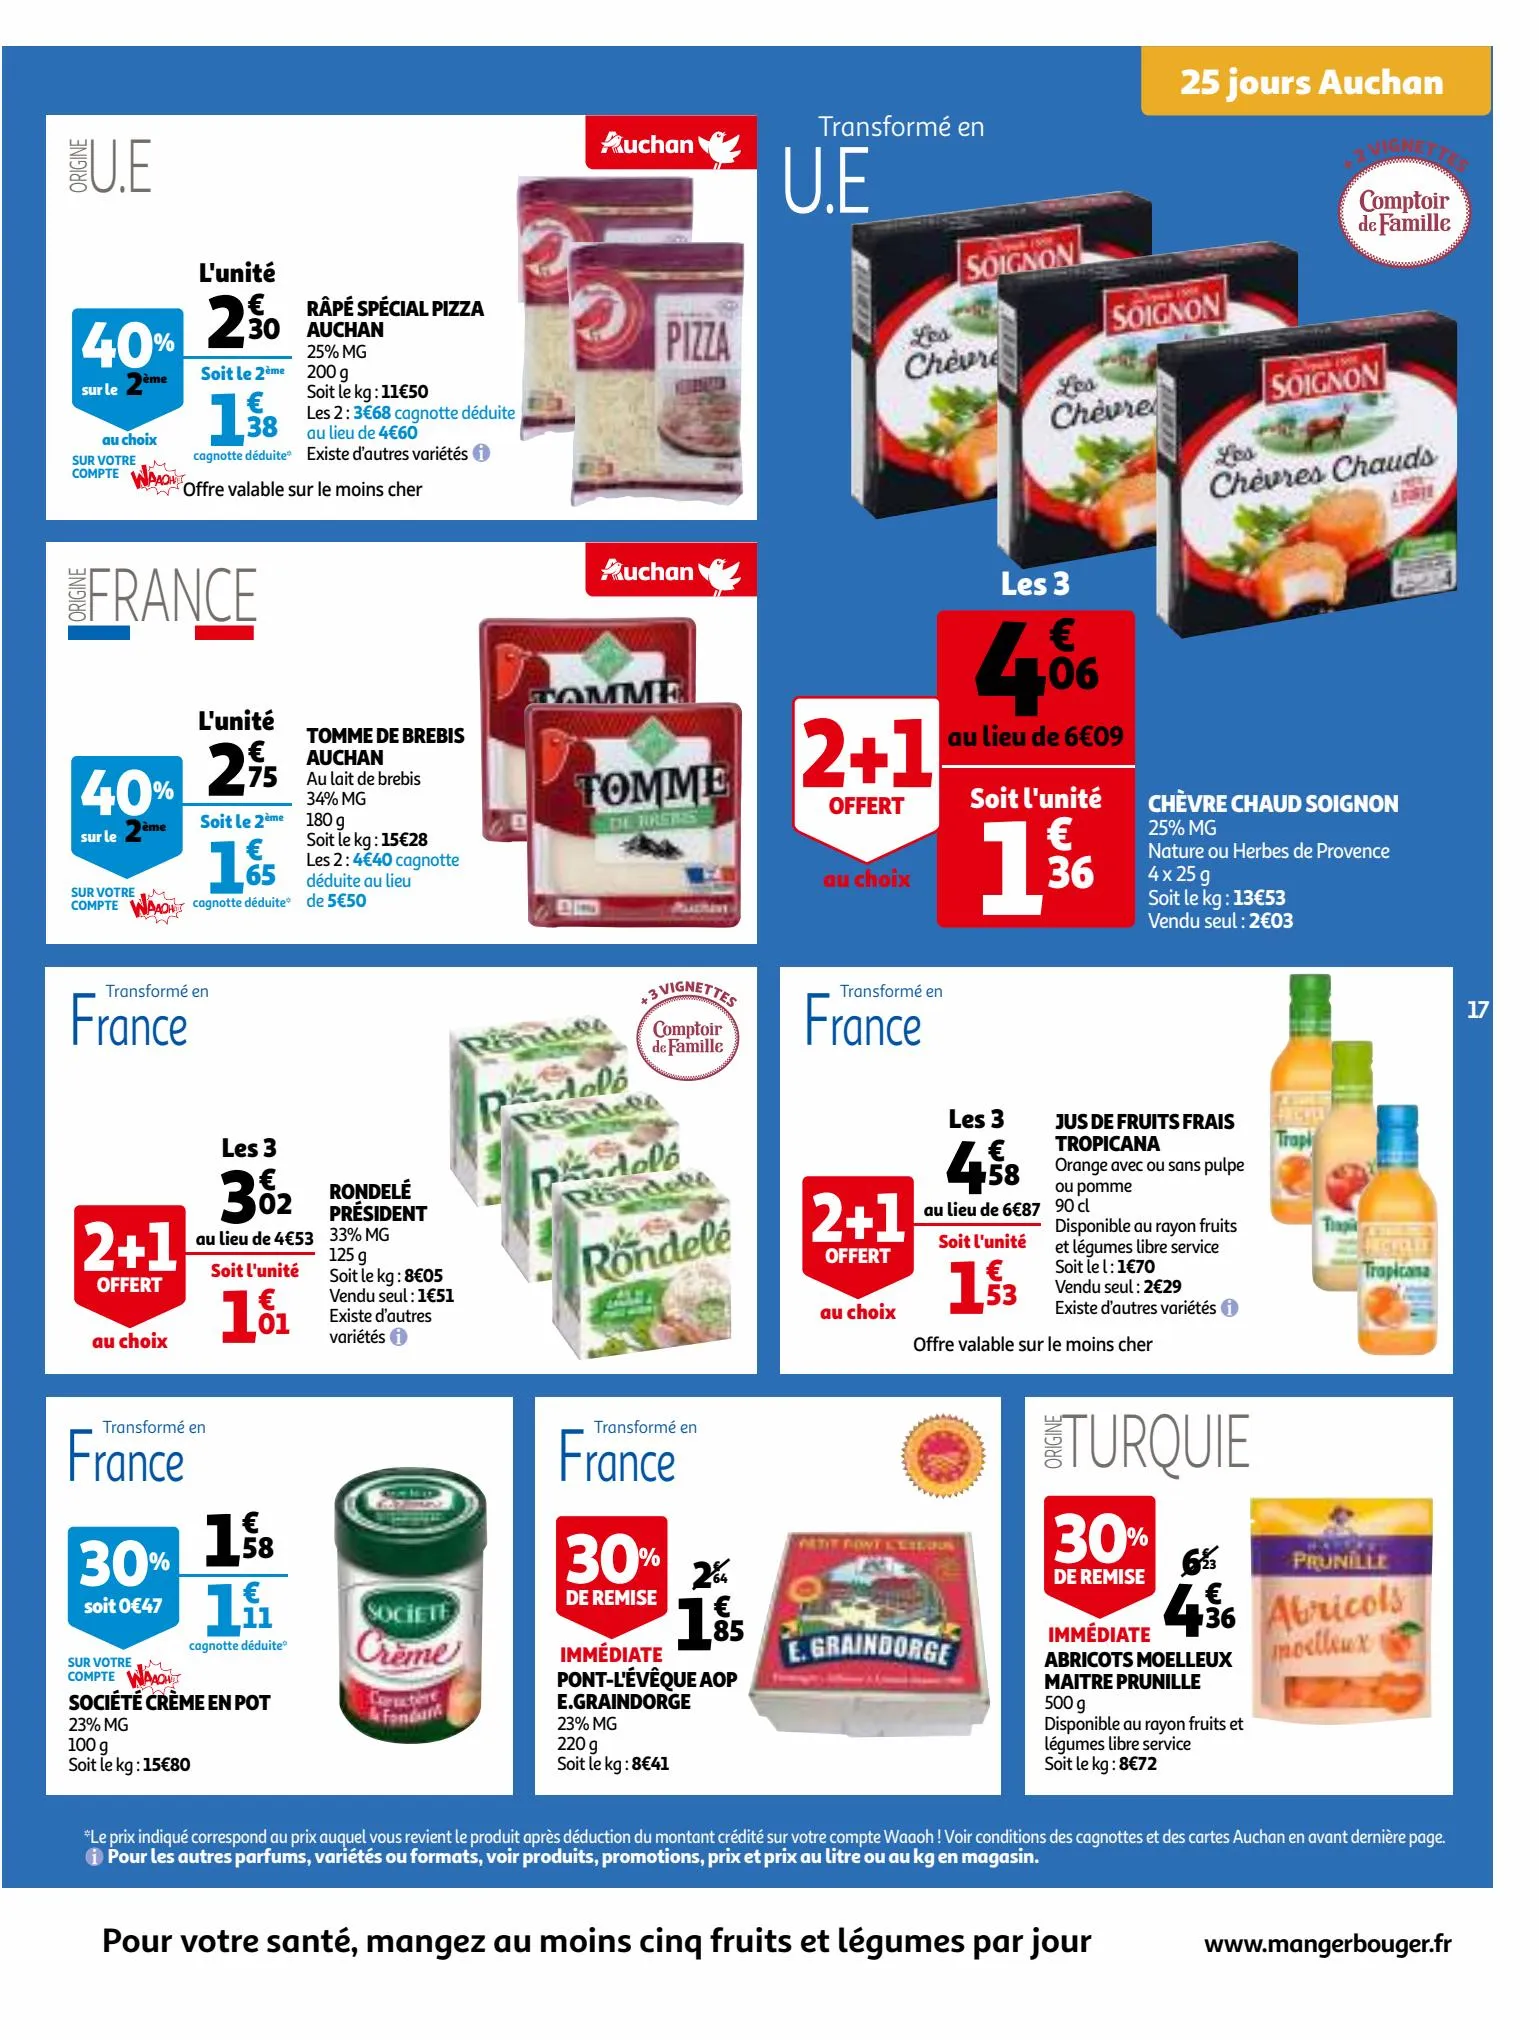 Catalogue 25 Jours Auchan, page 00017